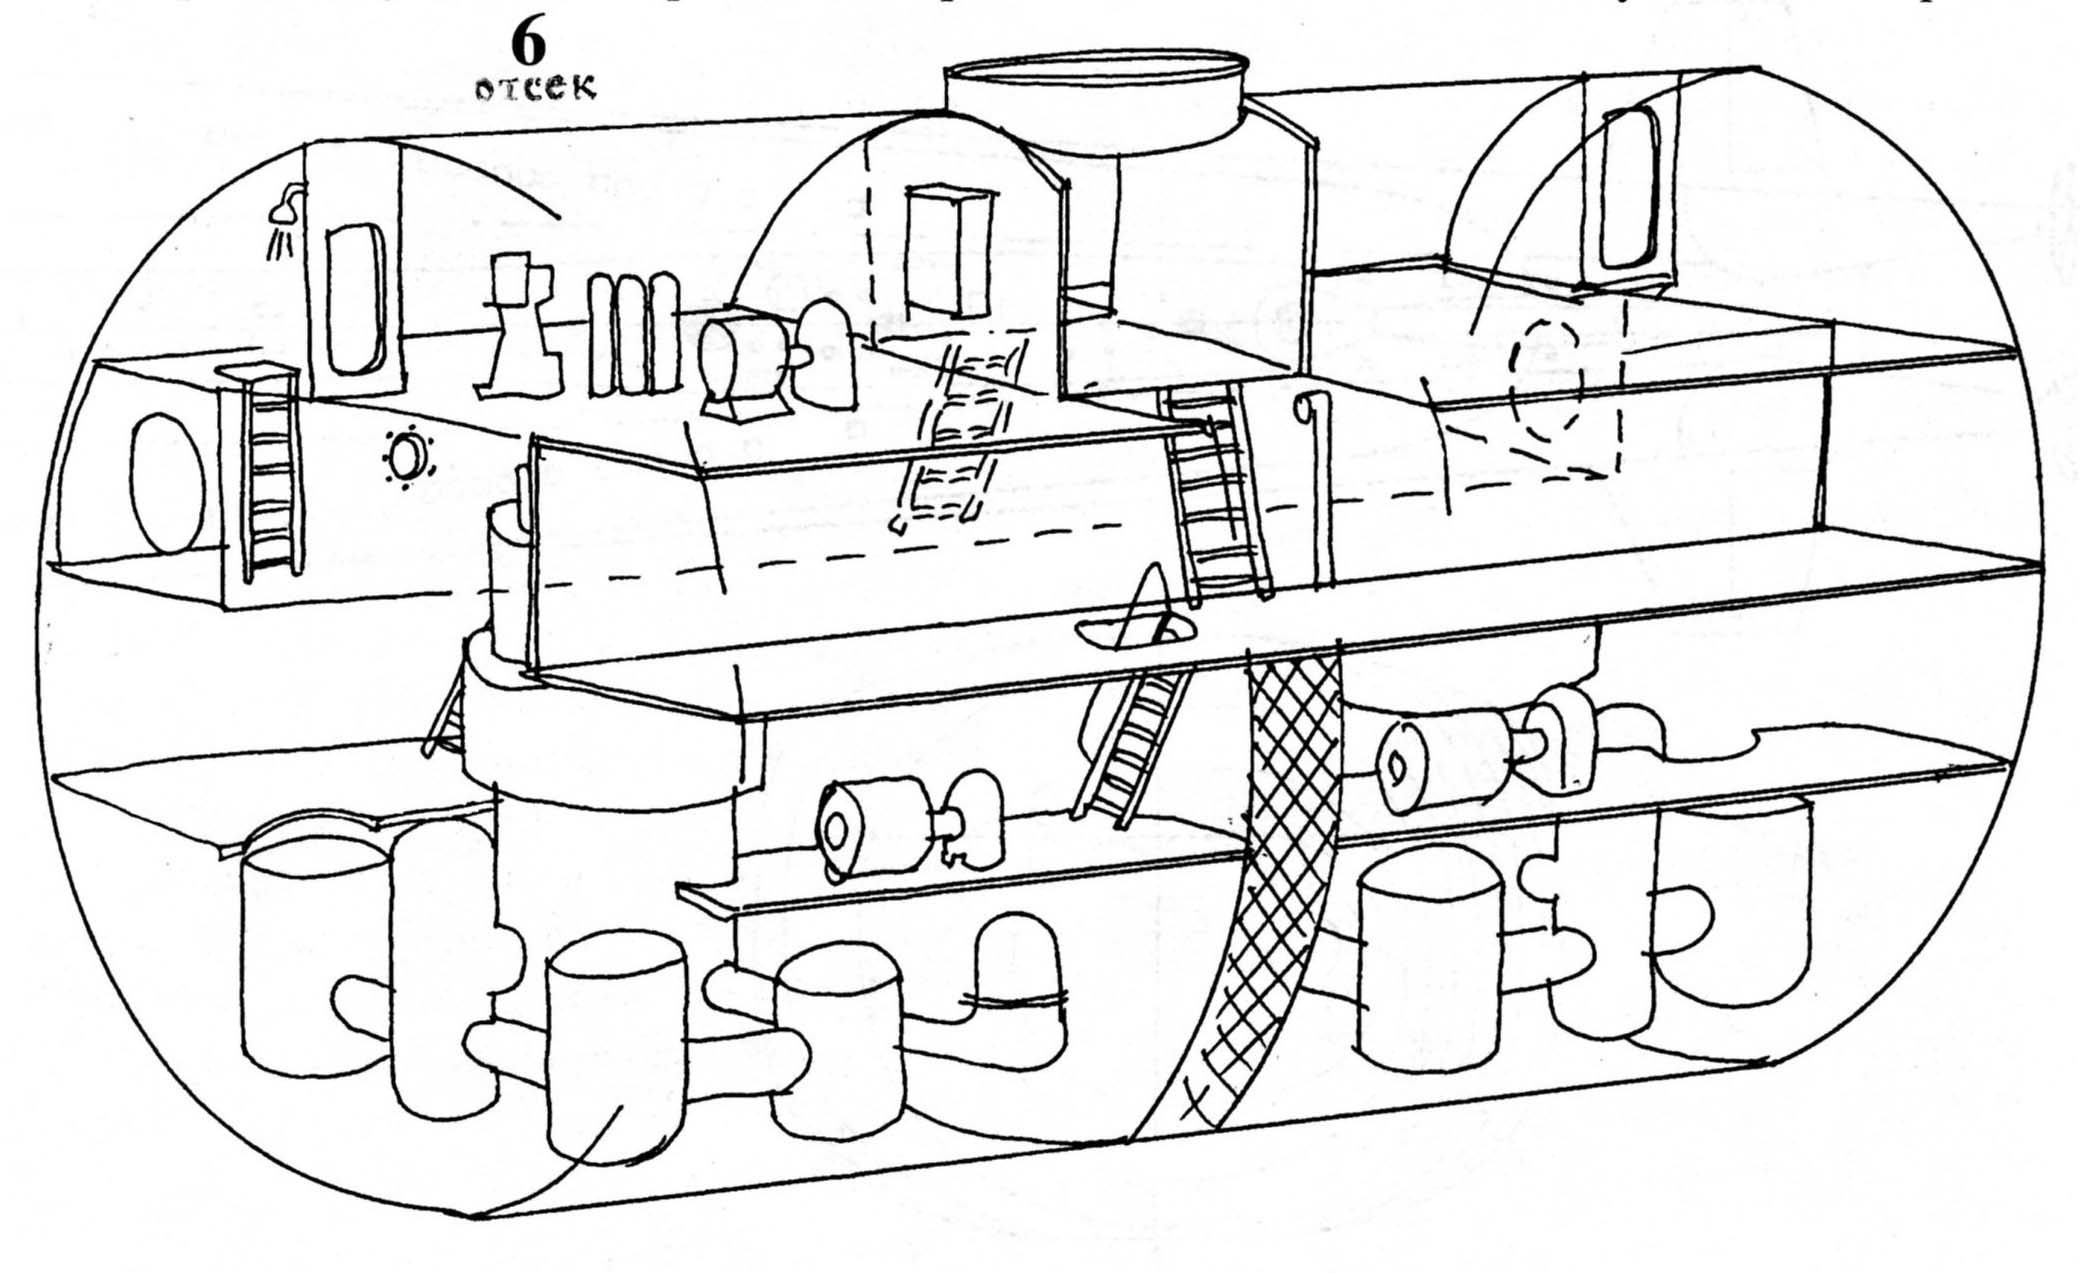 Схема отсеков подводной лодки Курск